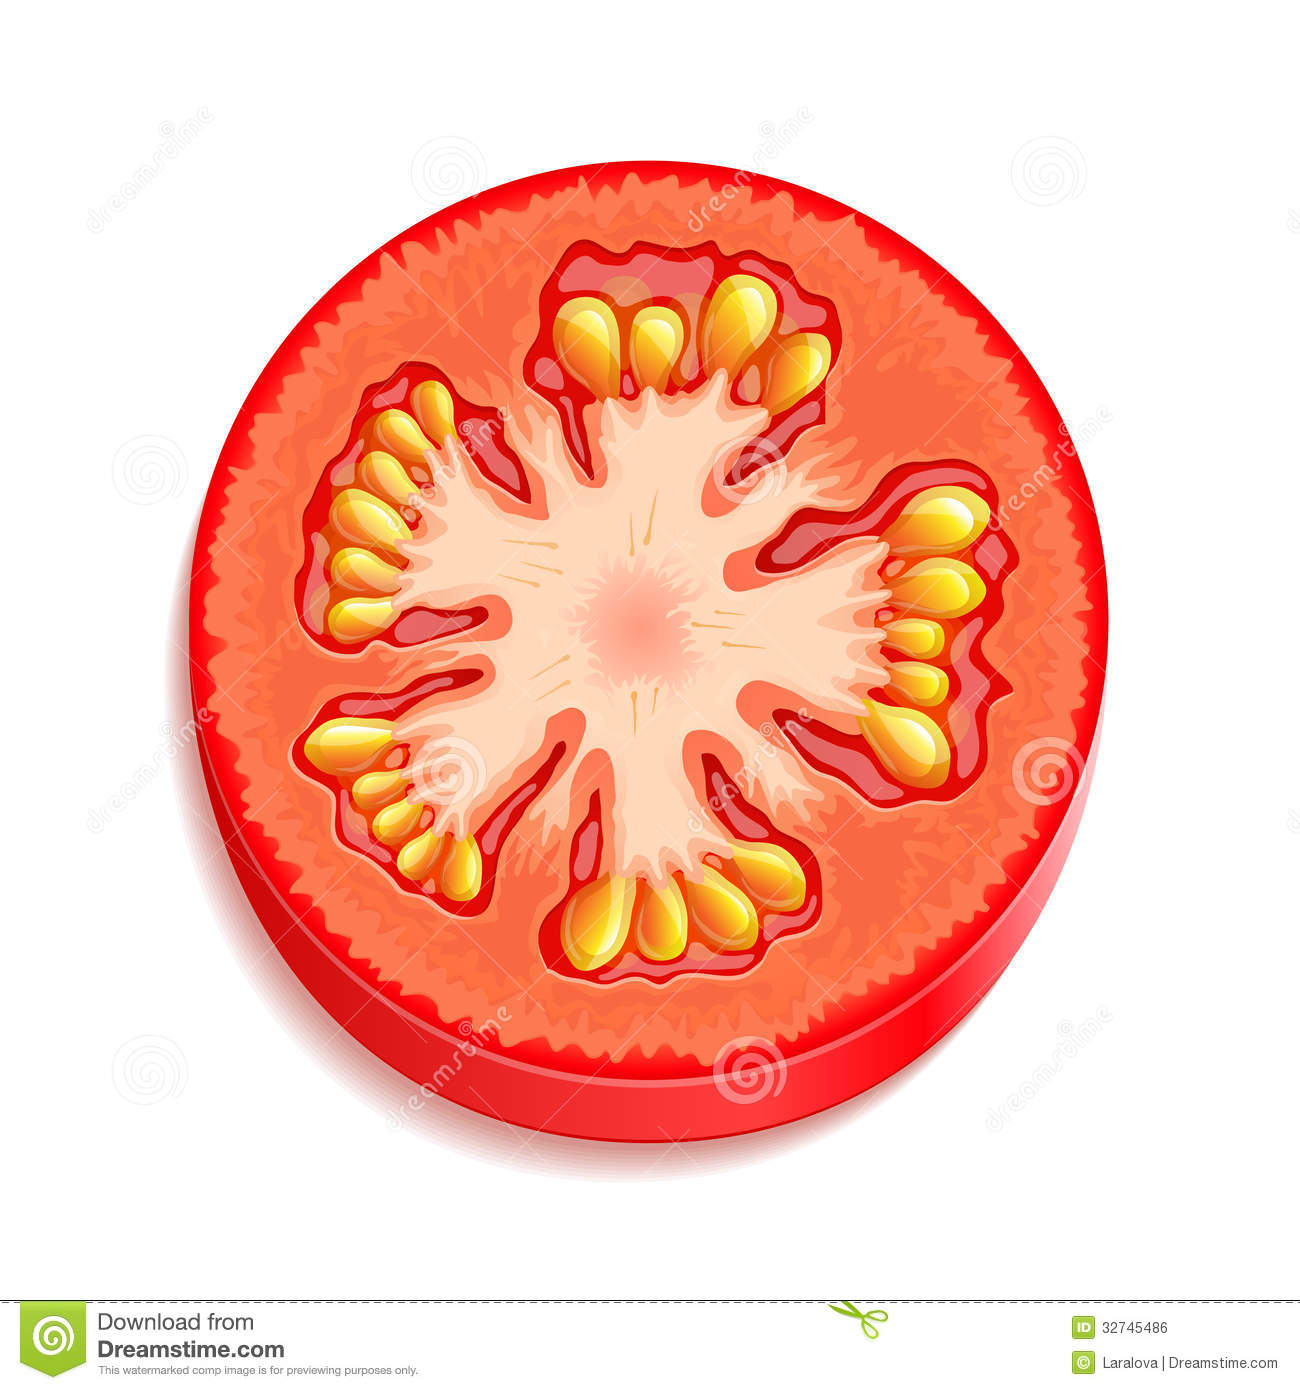 Slice Of Tomato Royalty Free Stock Image   Image  32745486